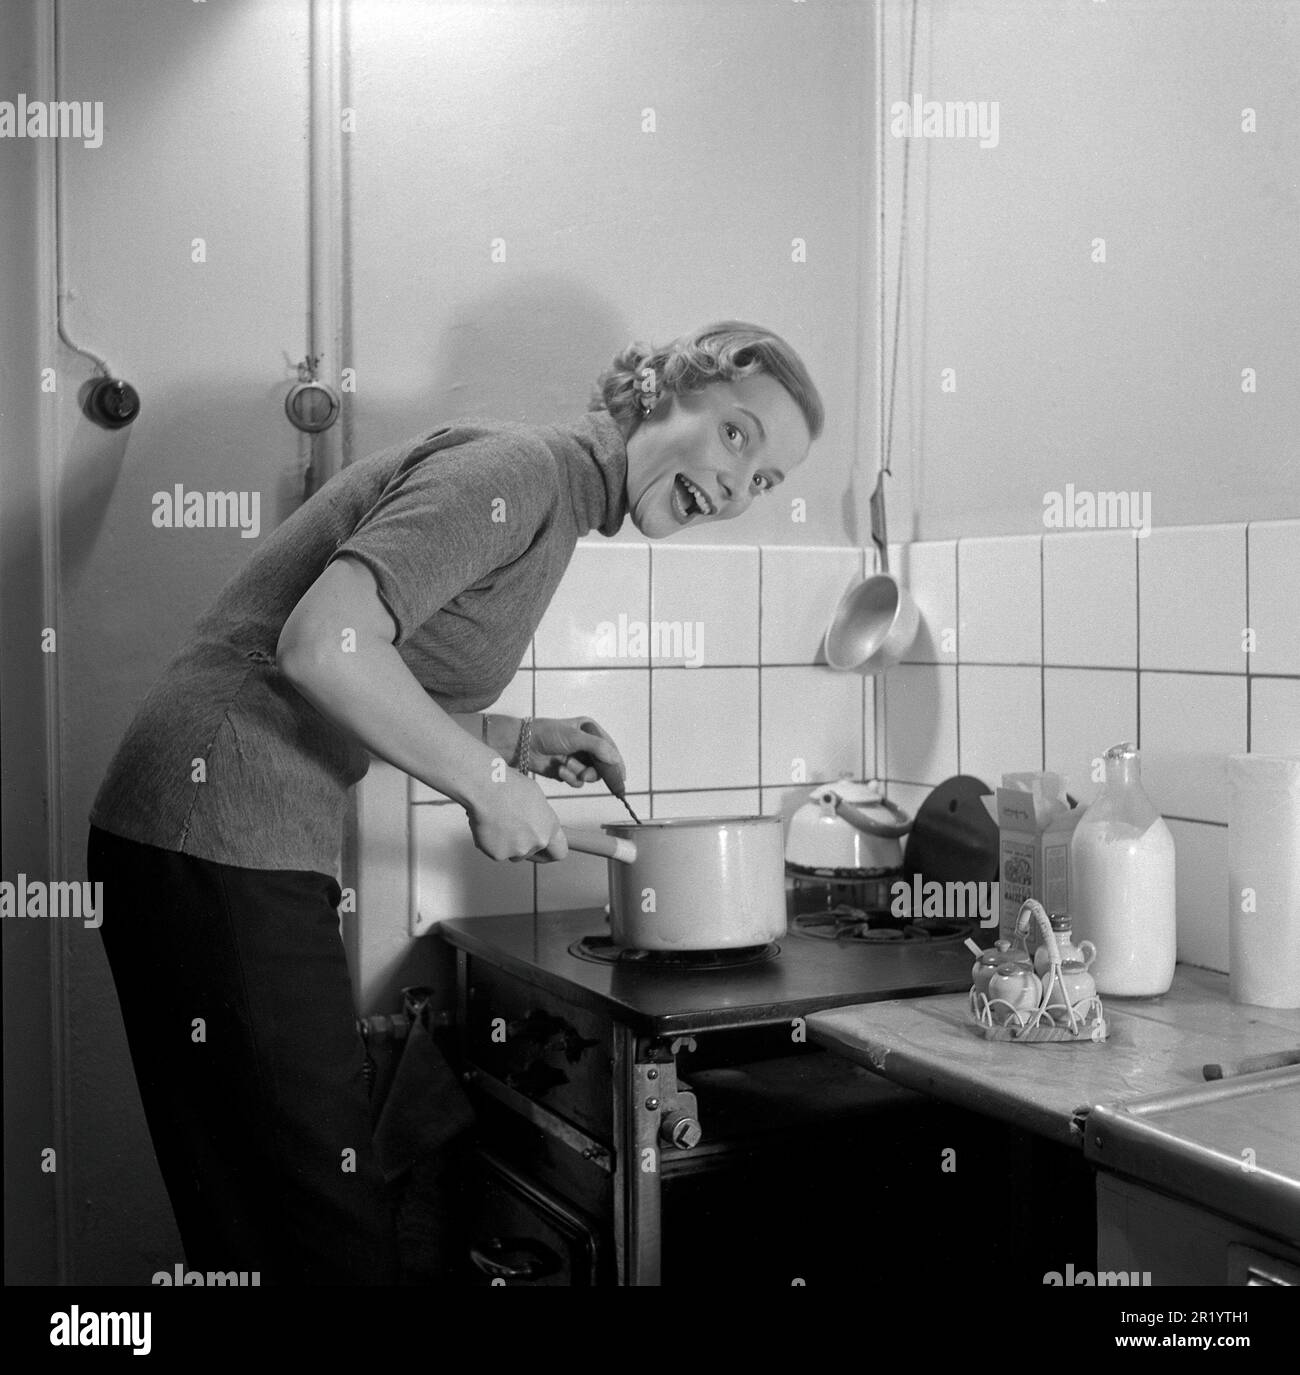 Dans la cuisine 1950s. Intérieur d'une cuisine et une jeune femme debout à la cuisinière de cuisine faisant un visage drôle tout en cuisinant quelque chose dans une casserole. Elle est actrice Maj-Britt Thörn, 1923-2023. Suède 1951 Conard réf. 1652 Banque D'Images